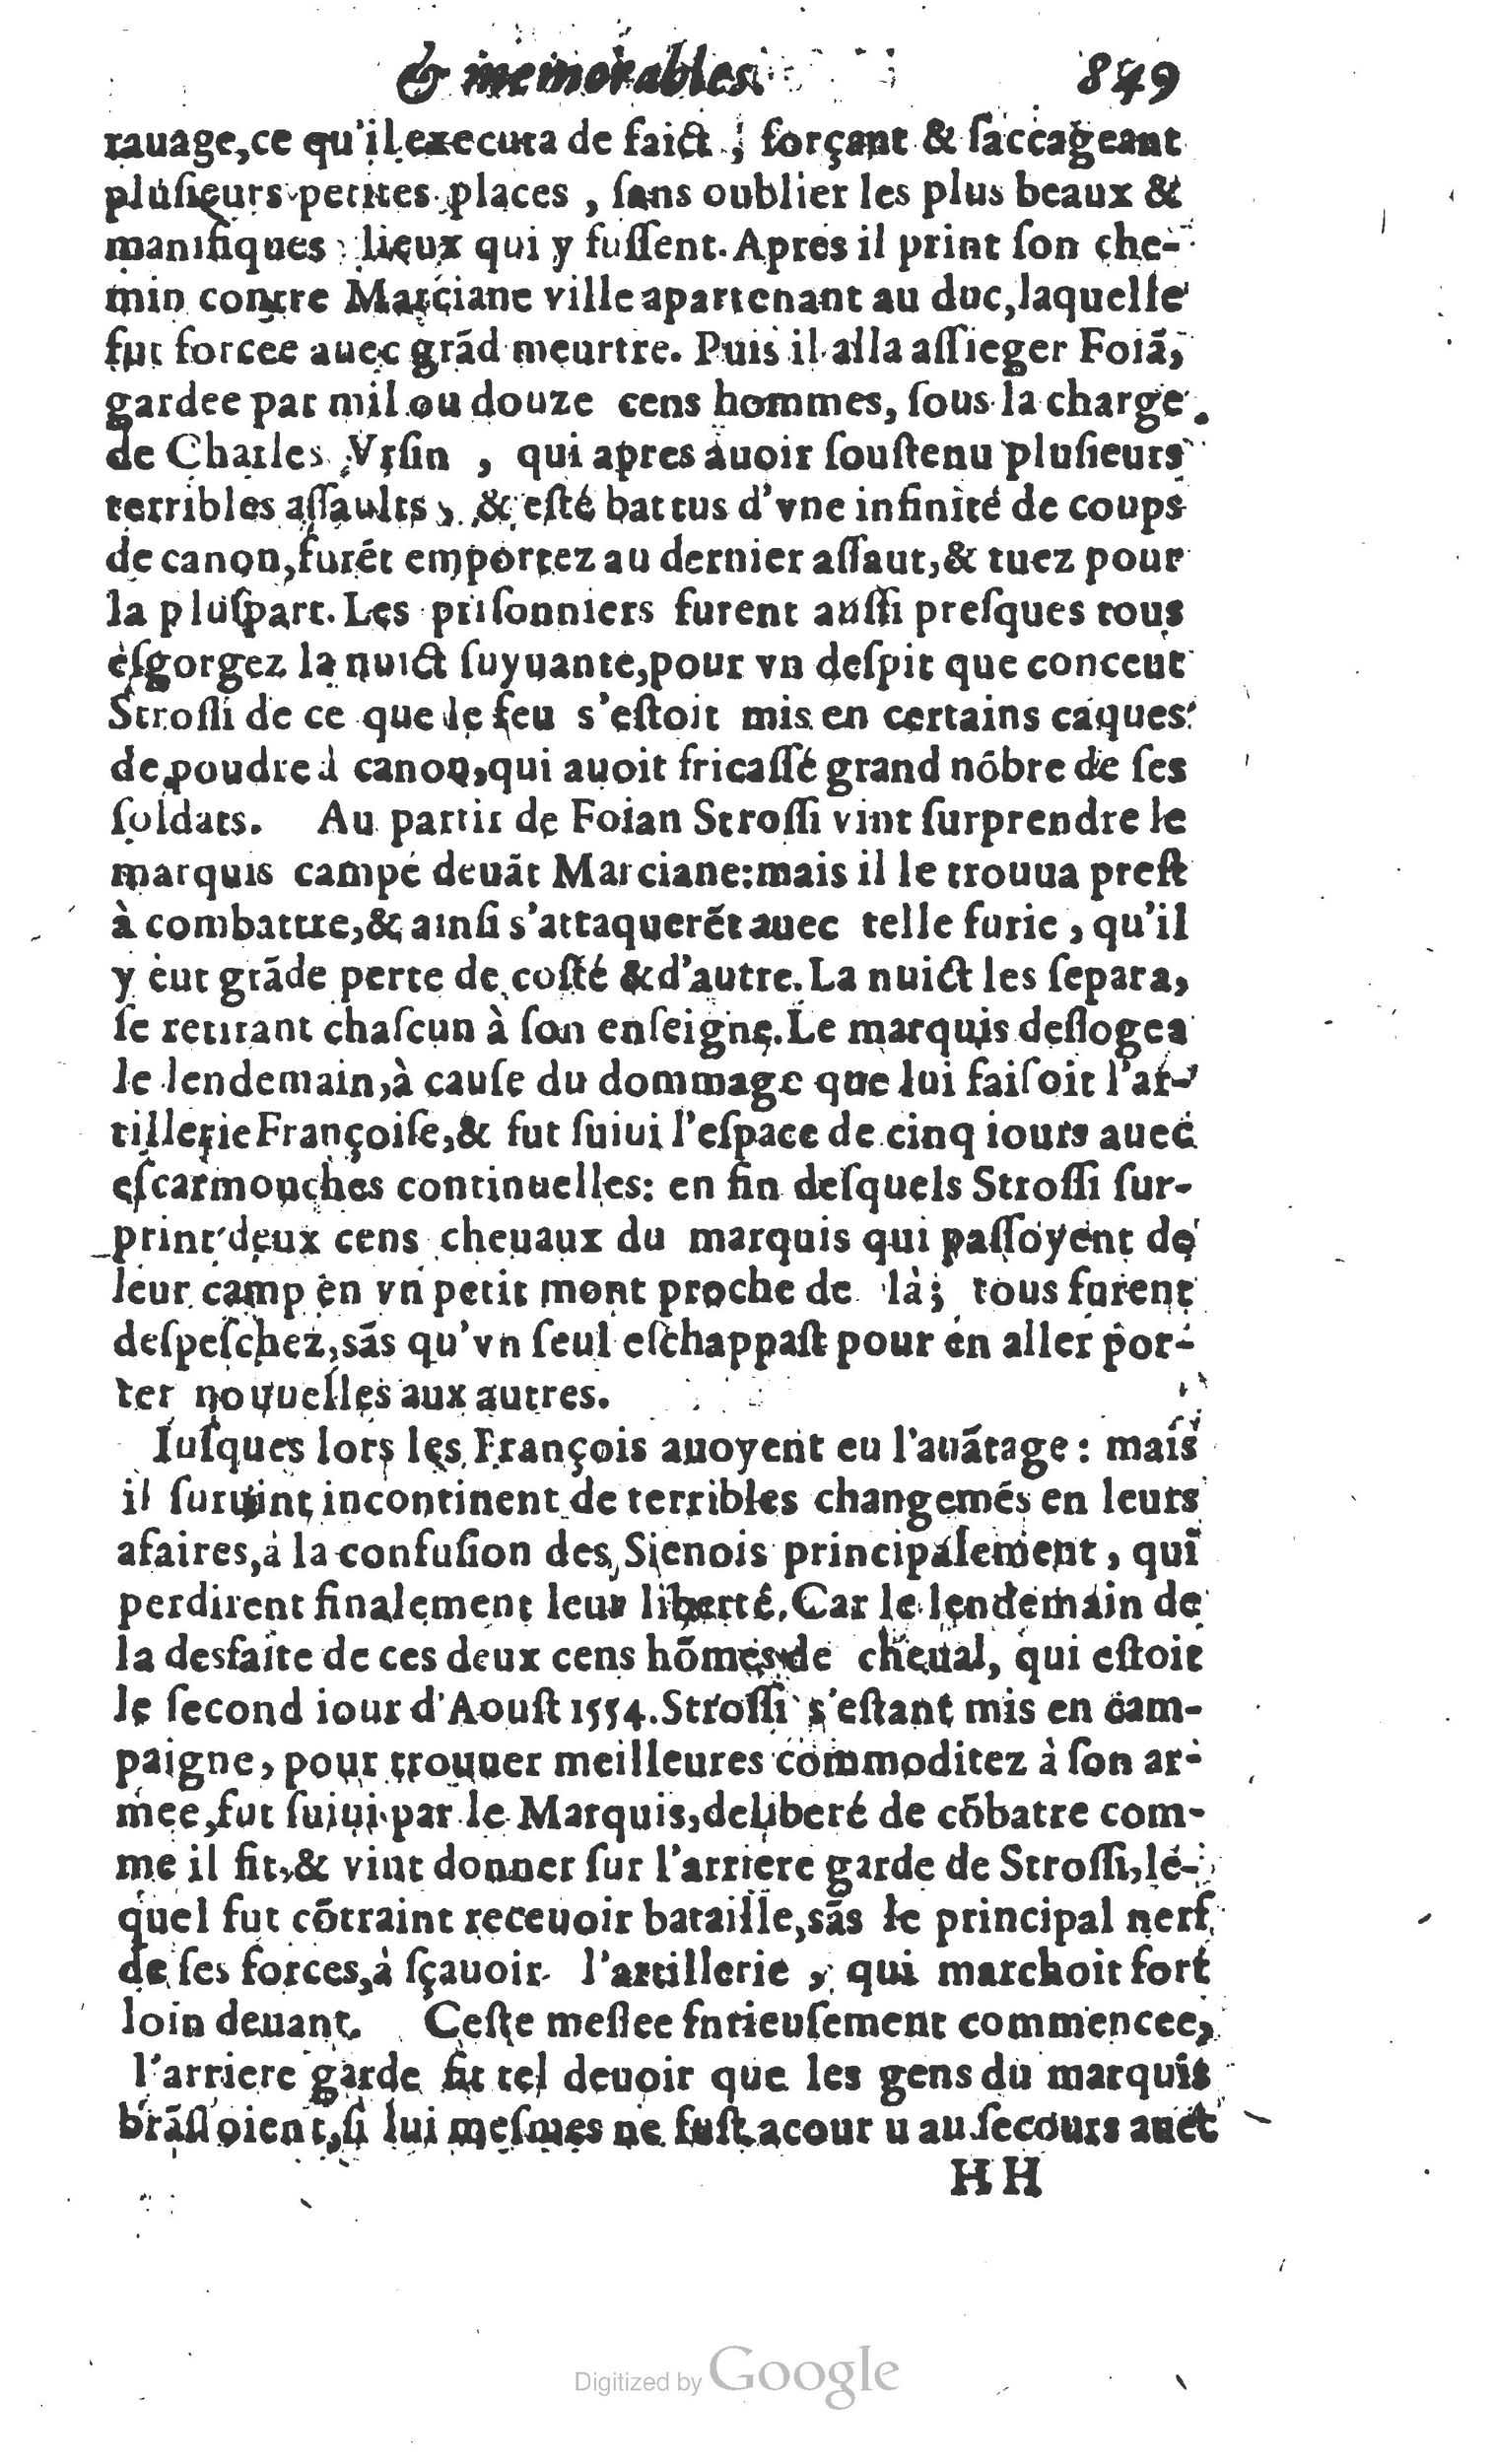 1610 Trésor d’histoires admirables et mémorables de nostre temps Marceau Princeton_Page_0870.jpg